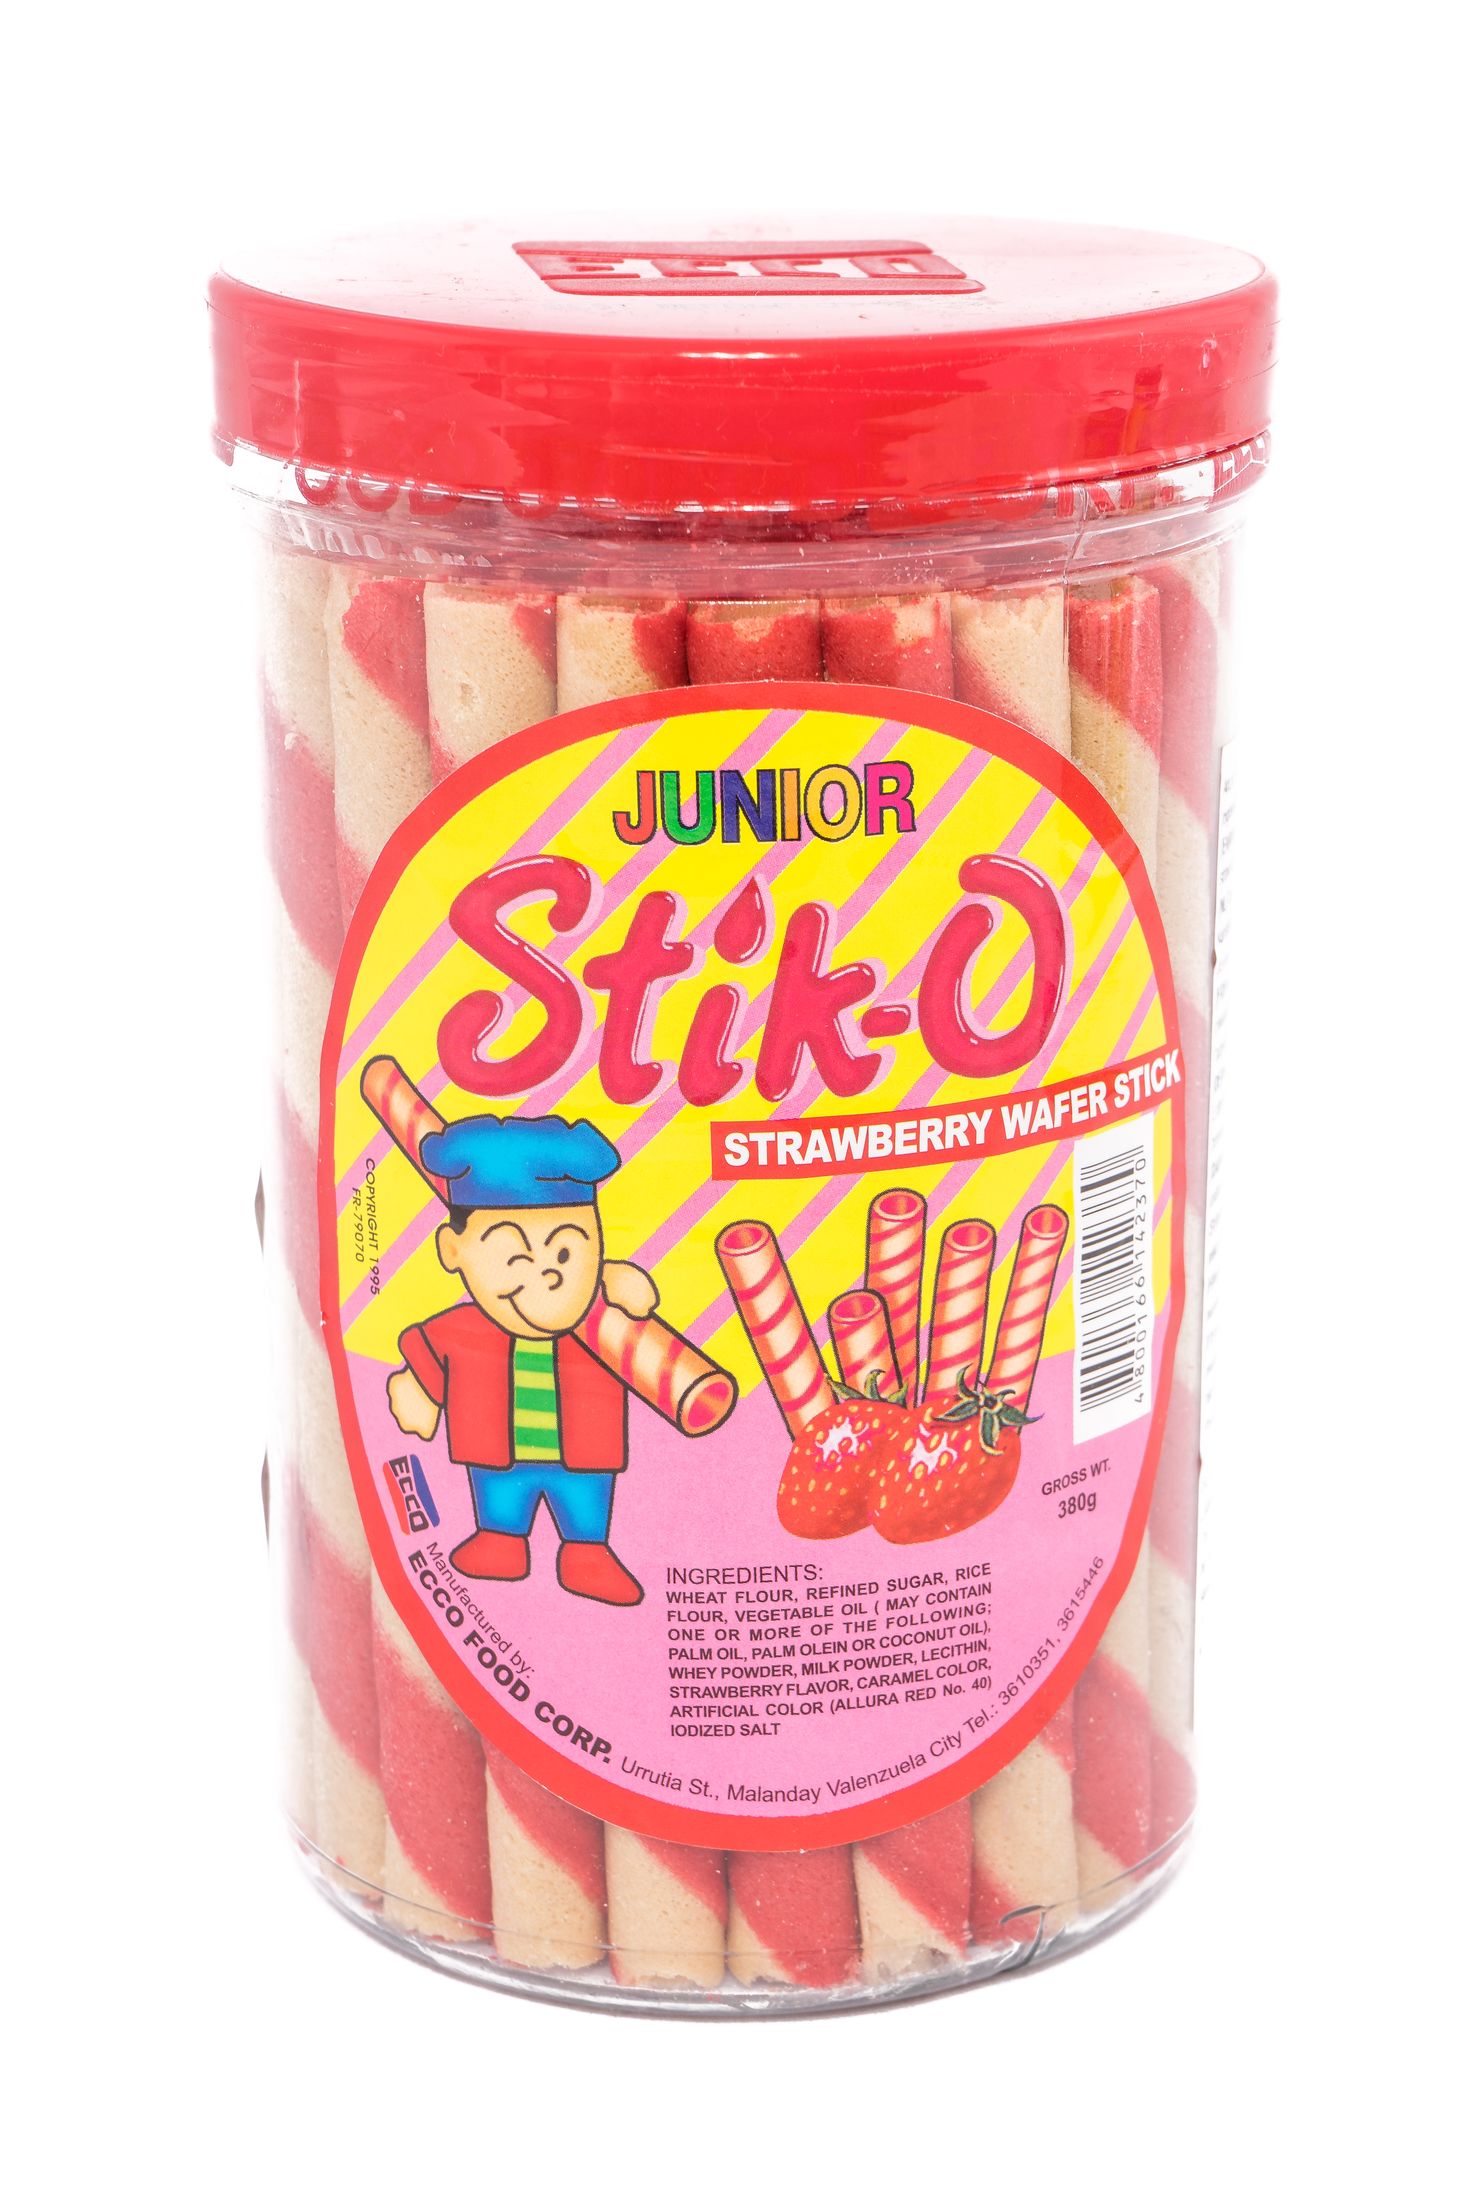 Junior Stik-O strawberry wafer stick